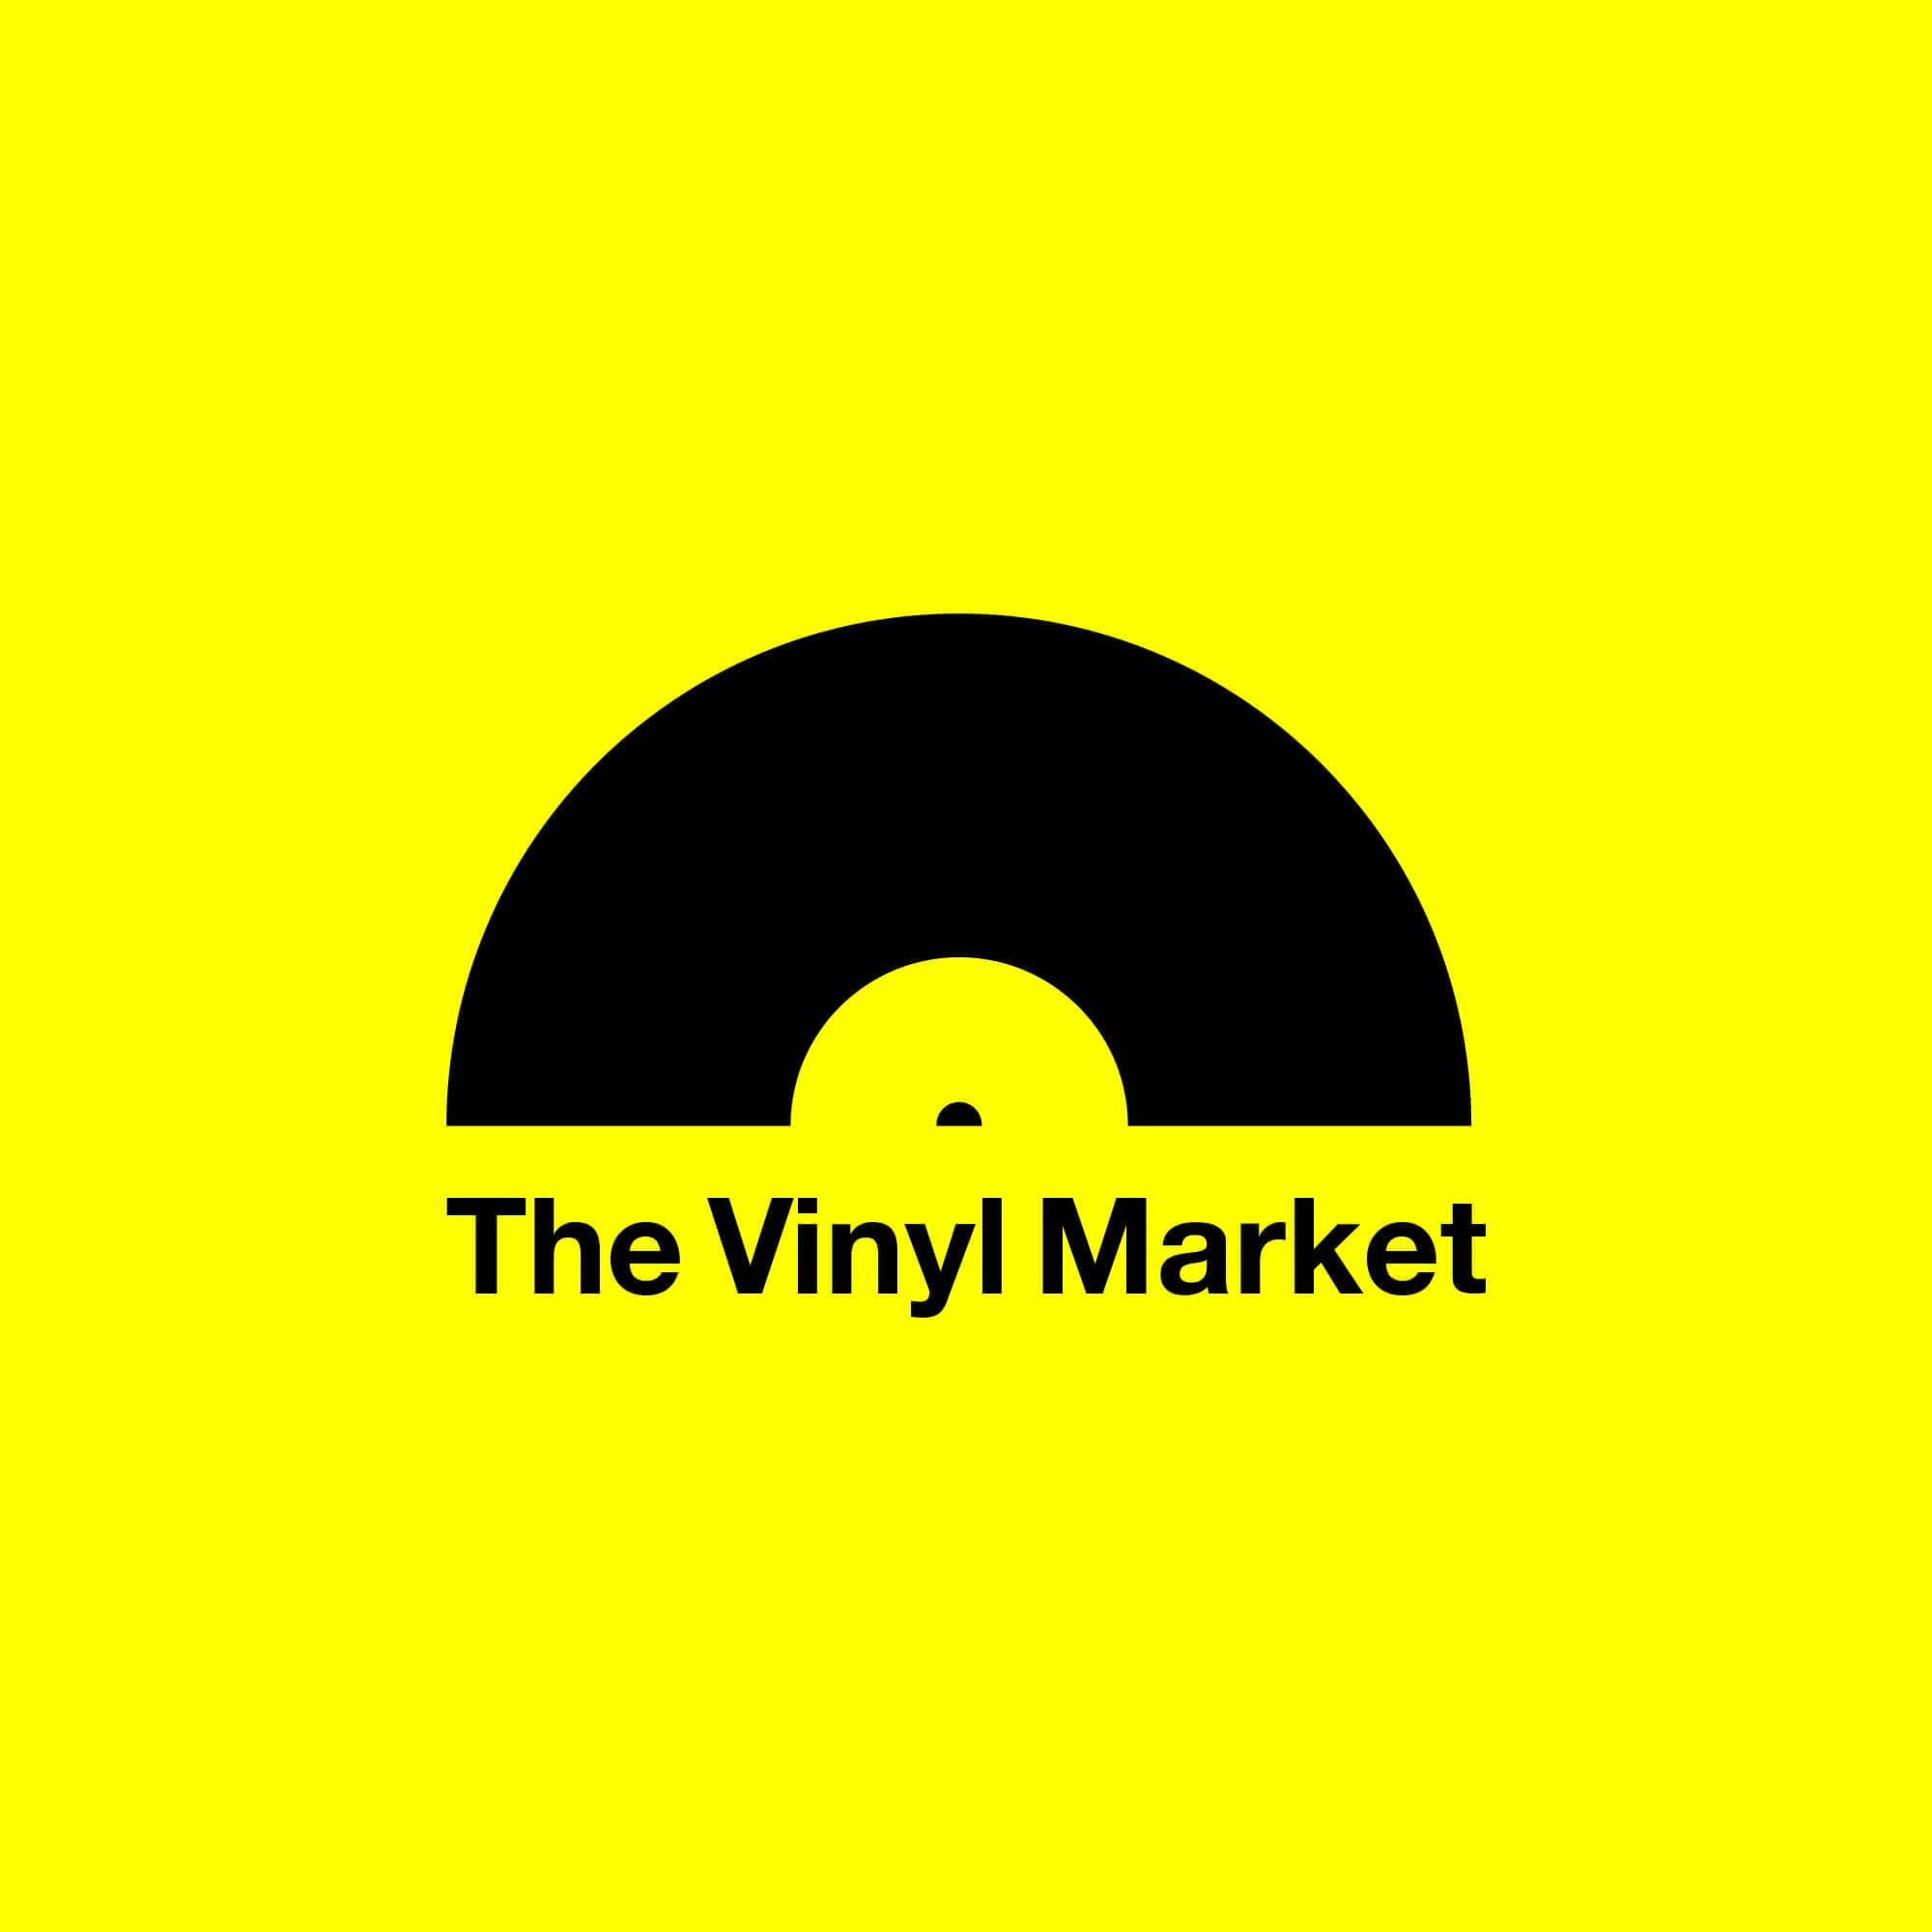 The Vinyl Market – Logo